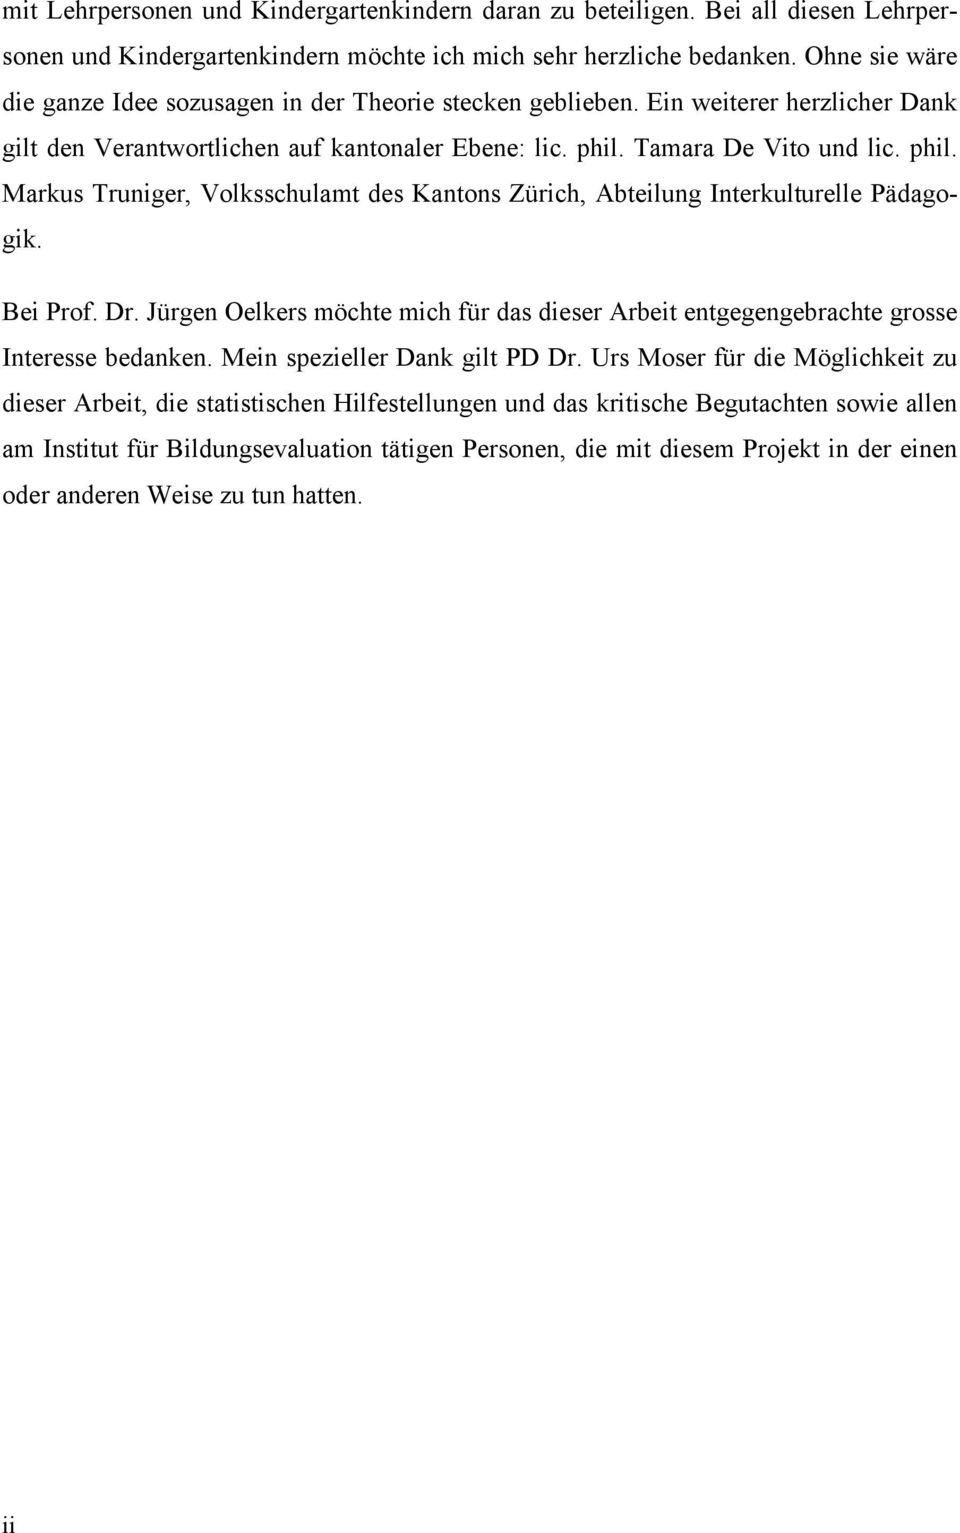 Tamara De Vito und lic. phil. Markus Truniger, Volksschulamt des Kantons Zürich, Abteilung Interkulturelle Pädagogik. Bei Prof. Dr.